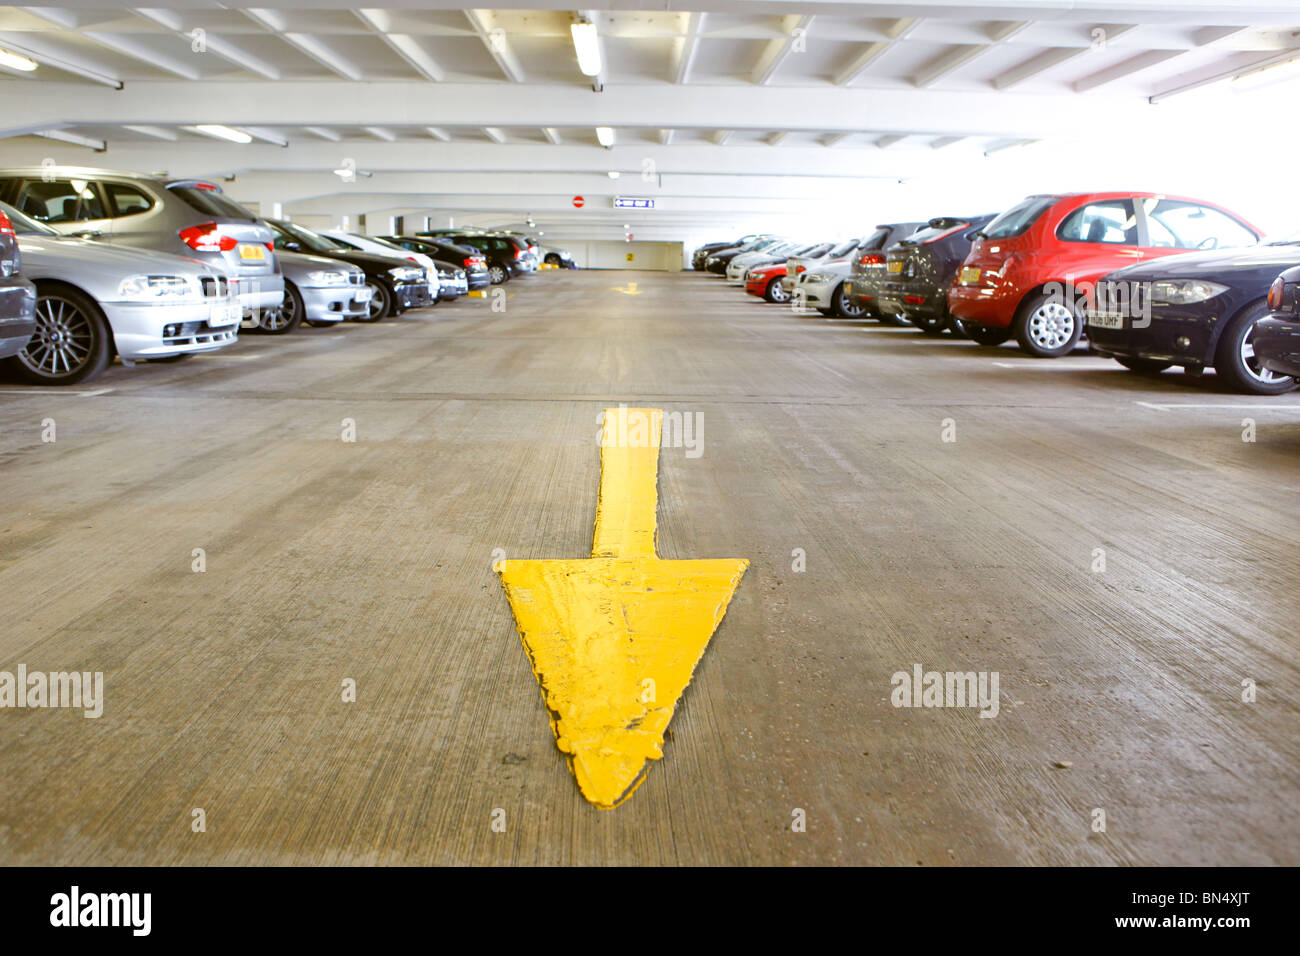 Car parking facilities, car park Stock Photo